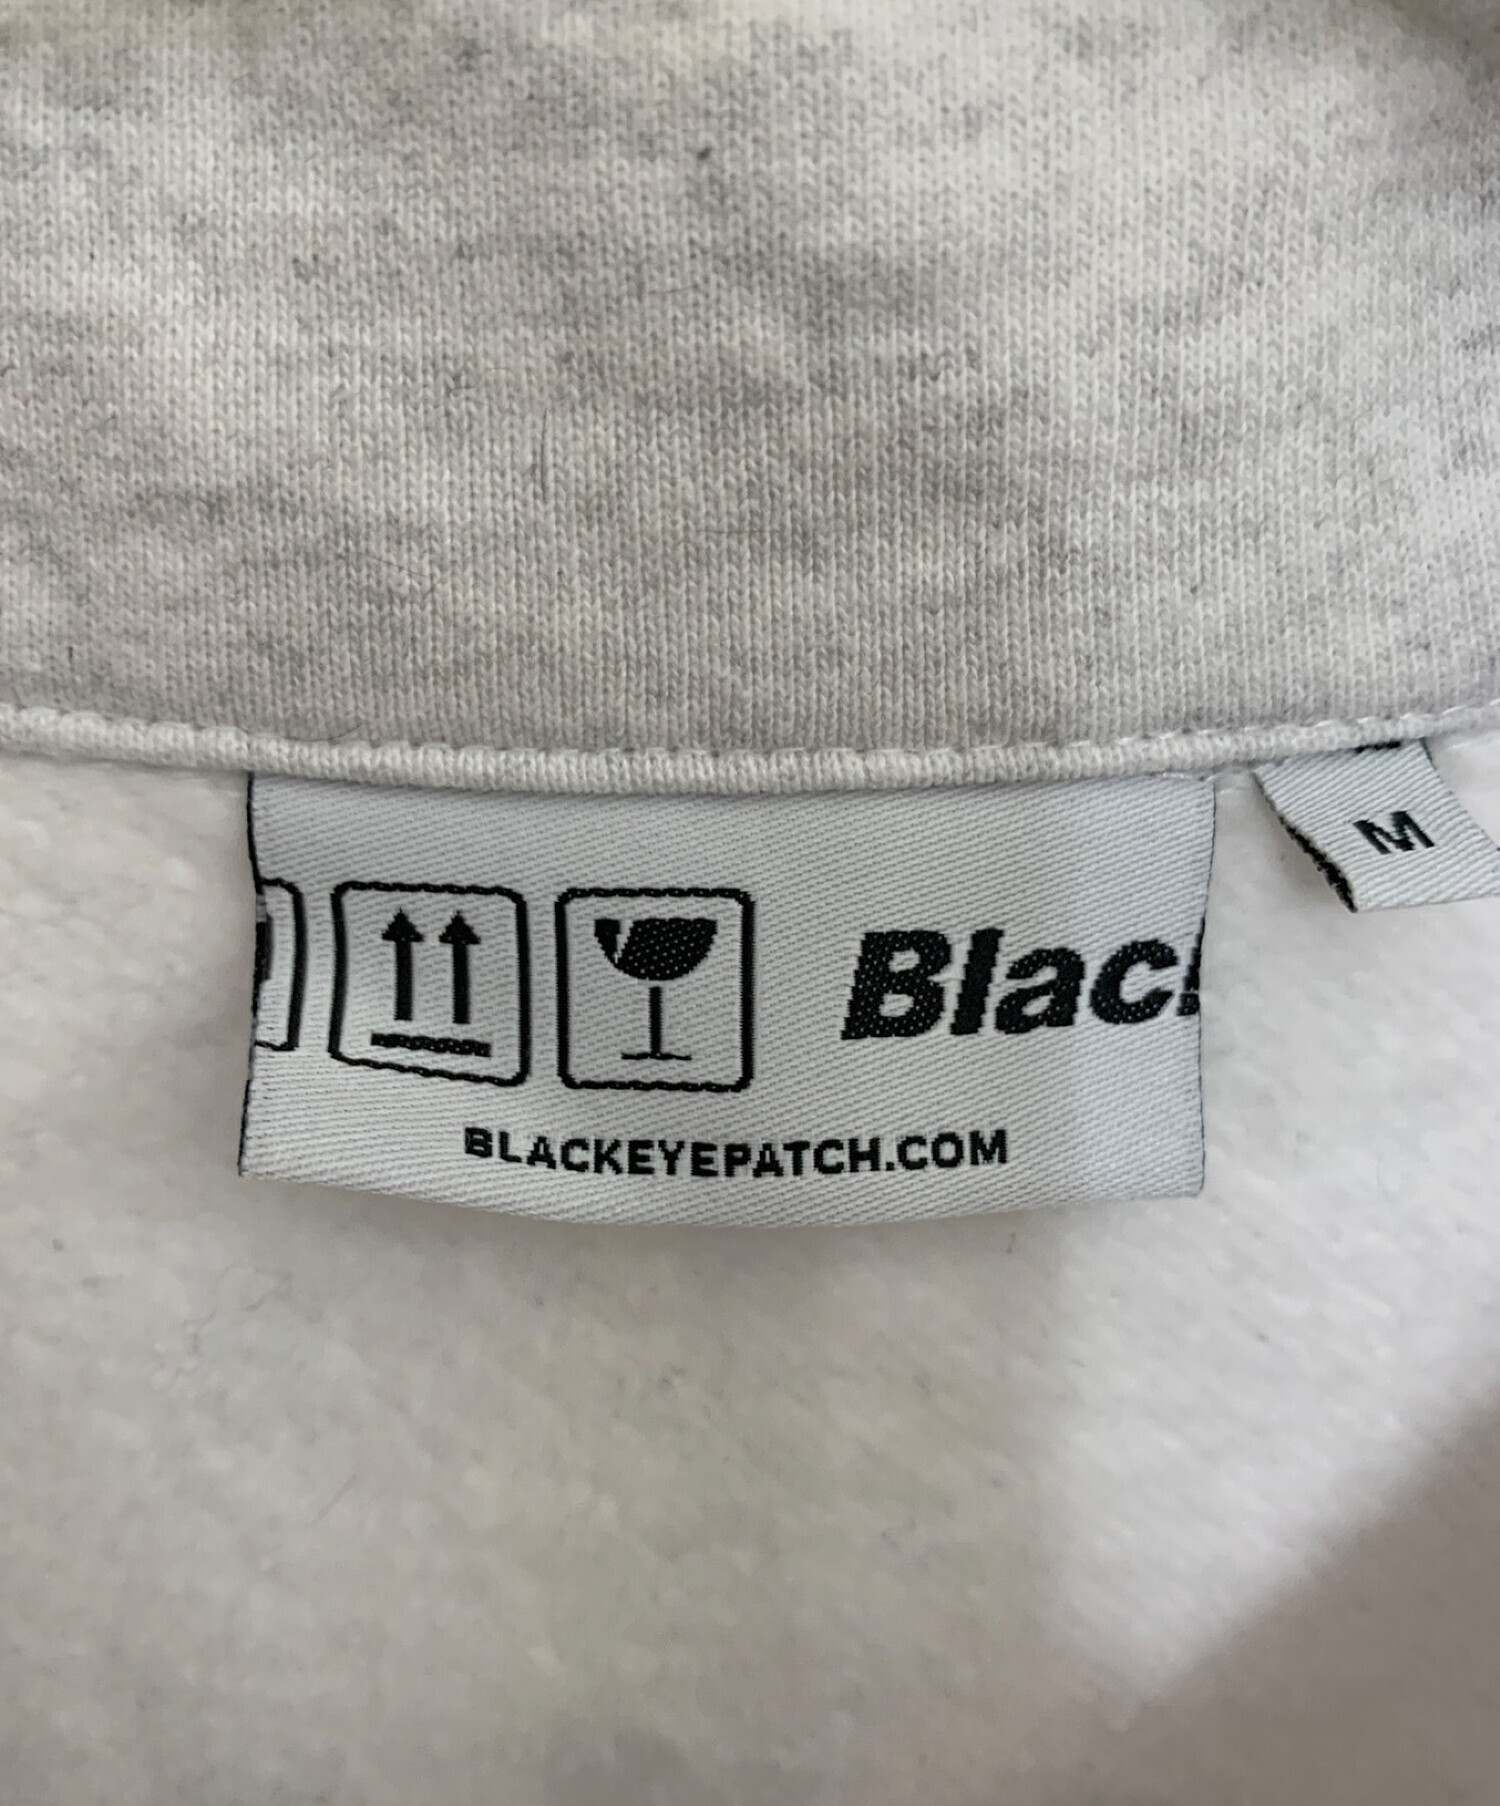 BlackEyePatch (ブラックアイパッチ) ハーフジップスウェット グレー サイズ:M